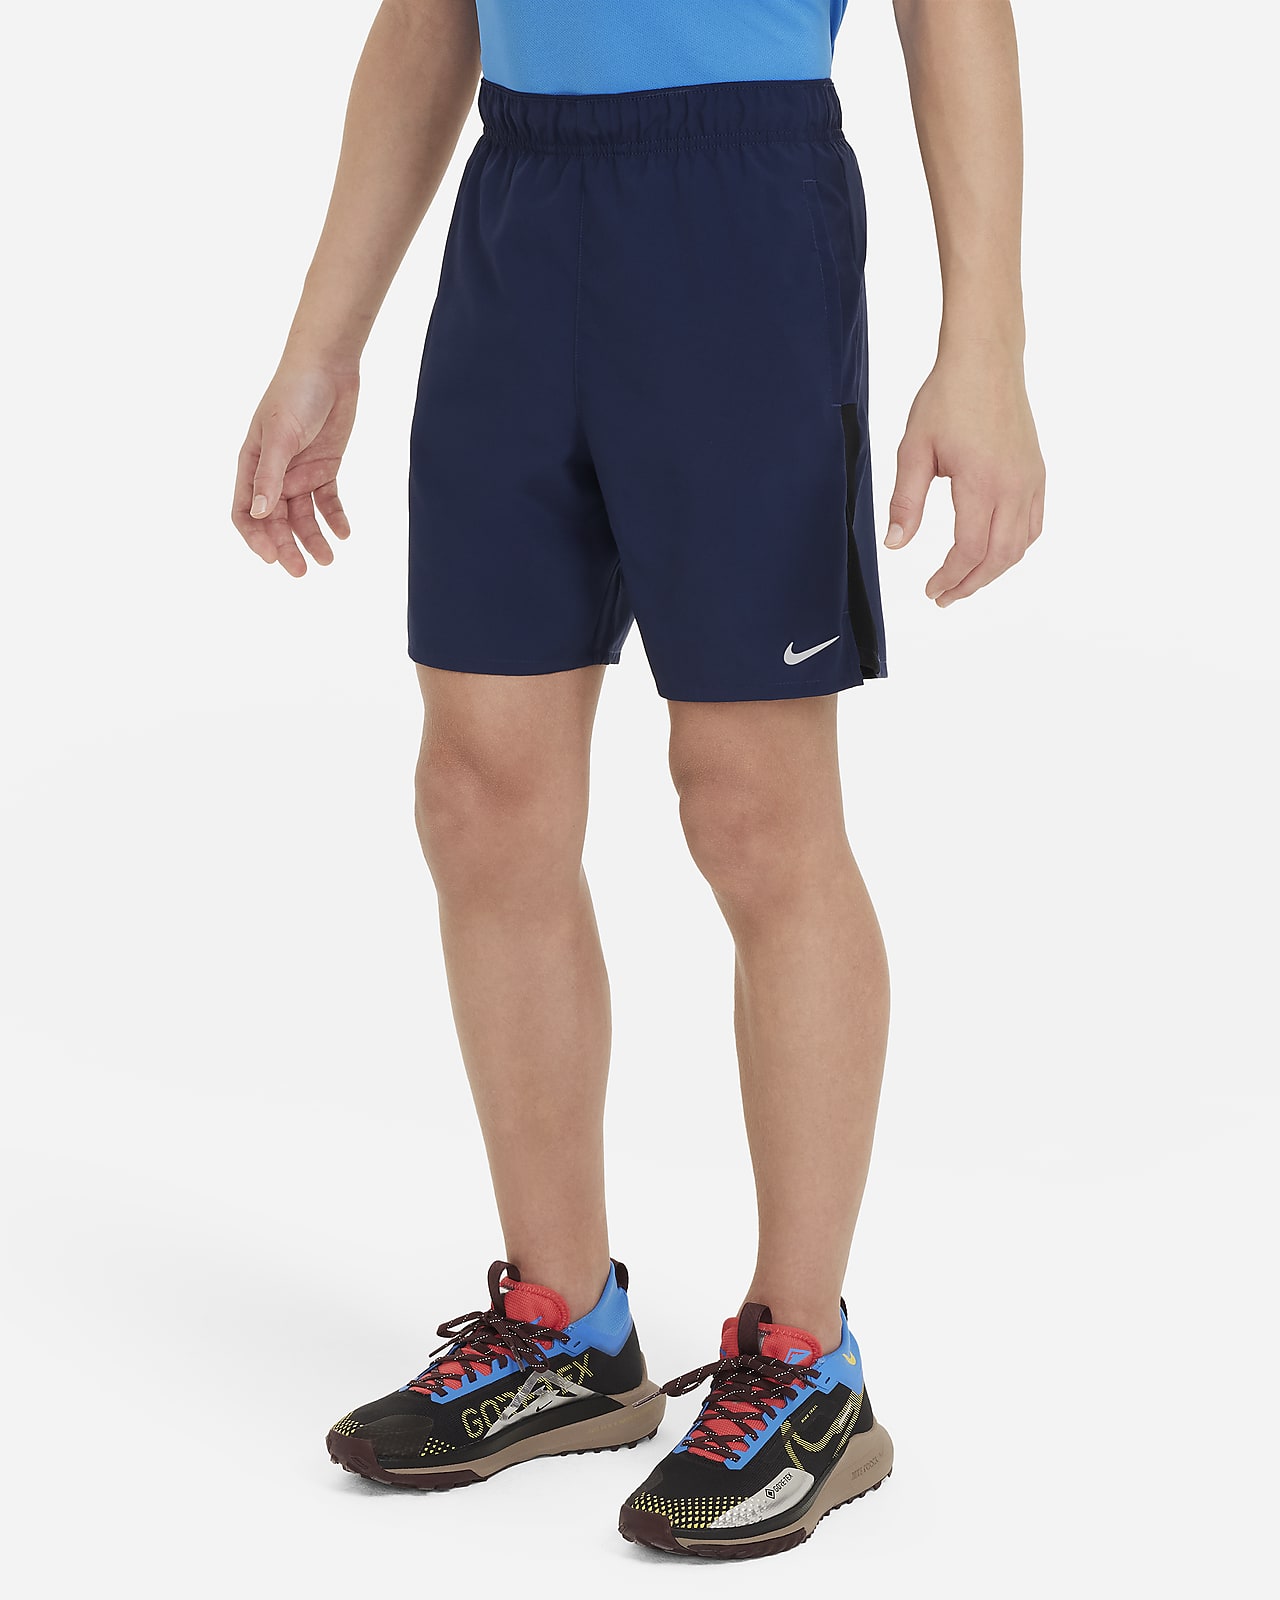 Nike Dri-FIT Challenger Trainingsshorts für ältere Kinder (Jungen)